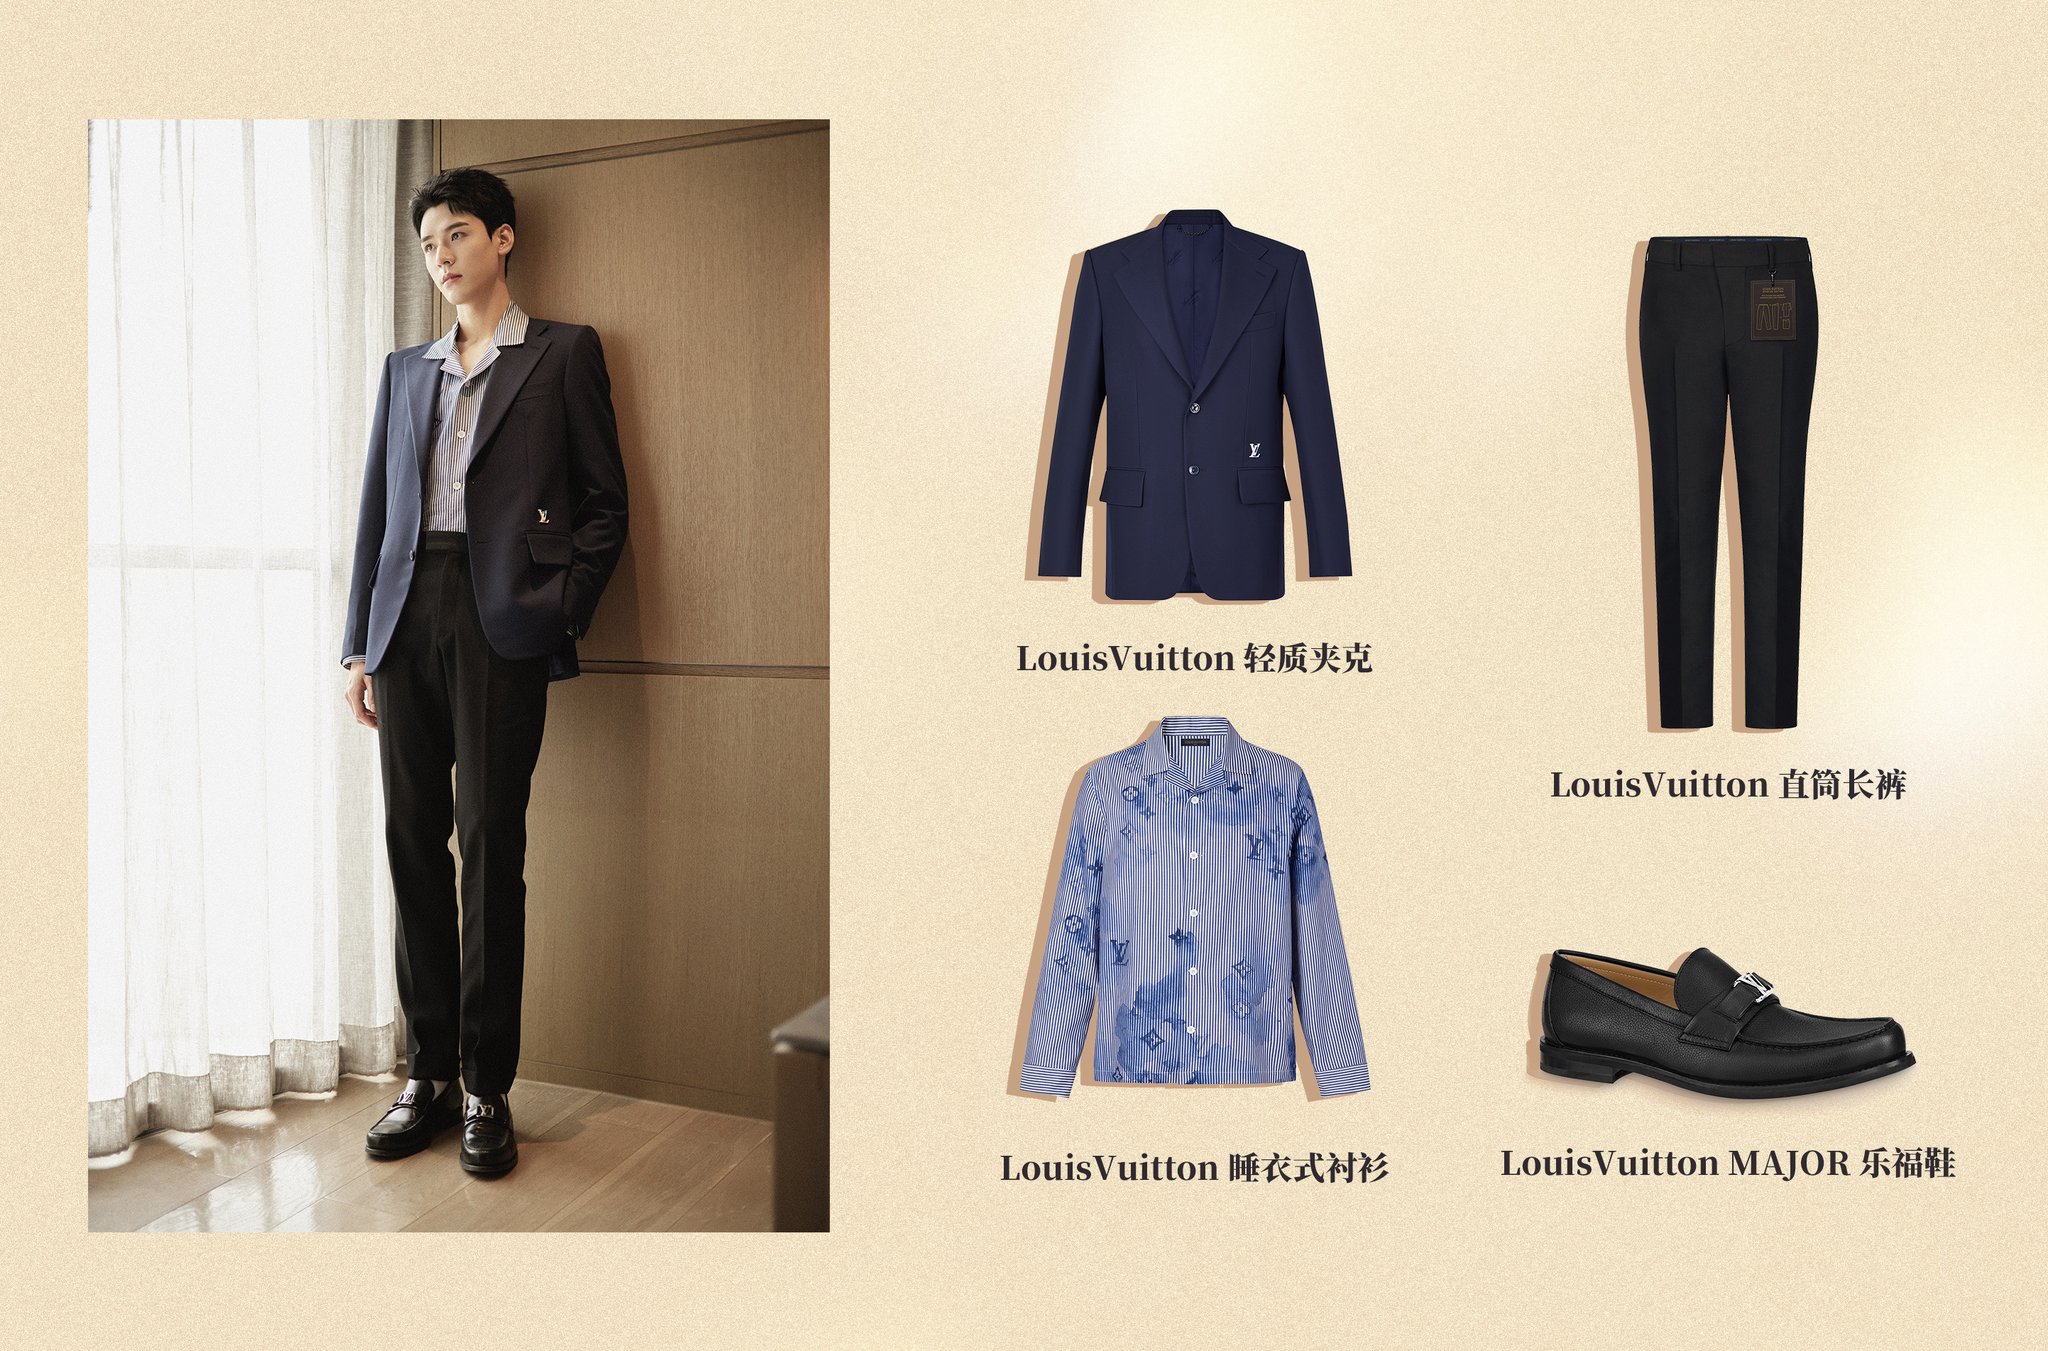 Dangerously Close to Hijinks — Gong Jun for Louis Vuitton dazzling